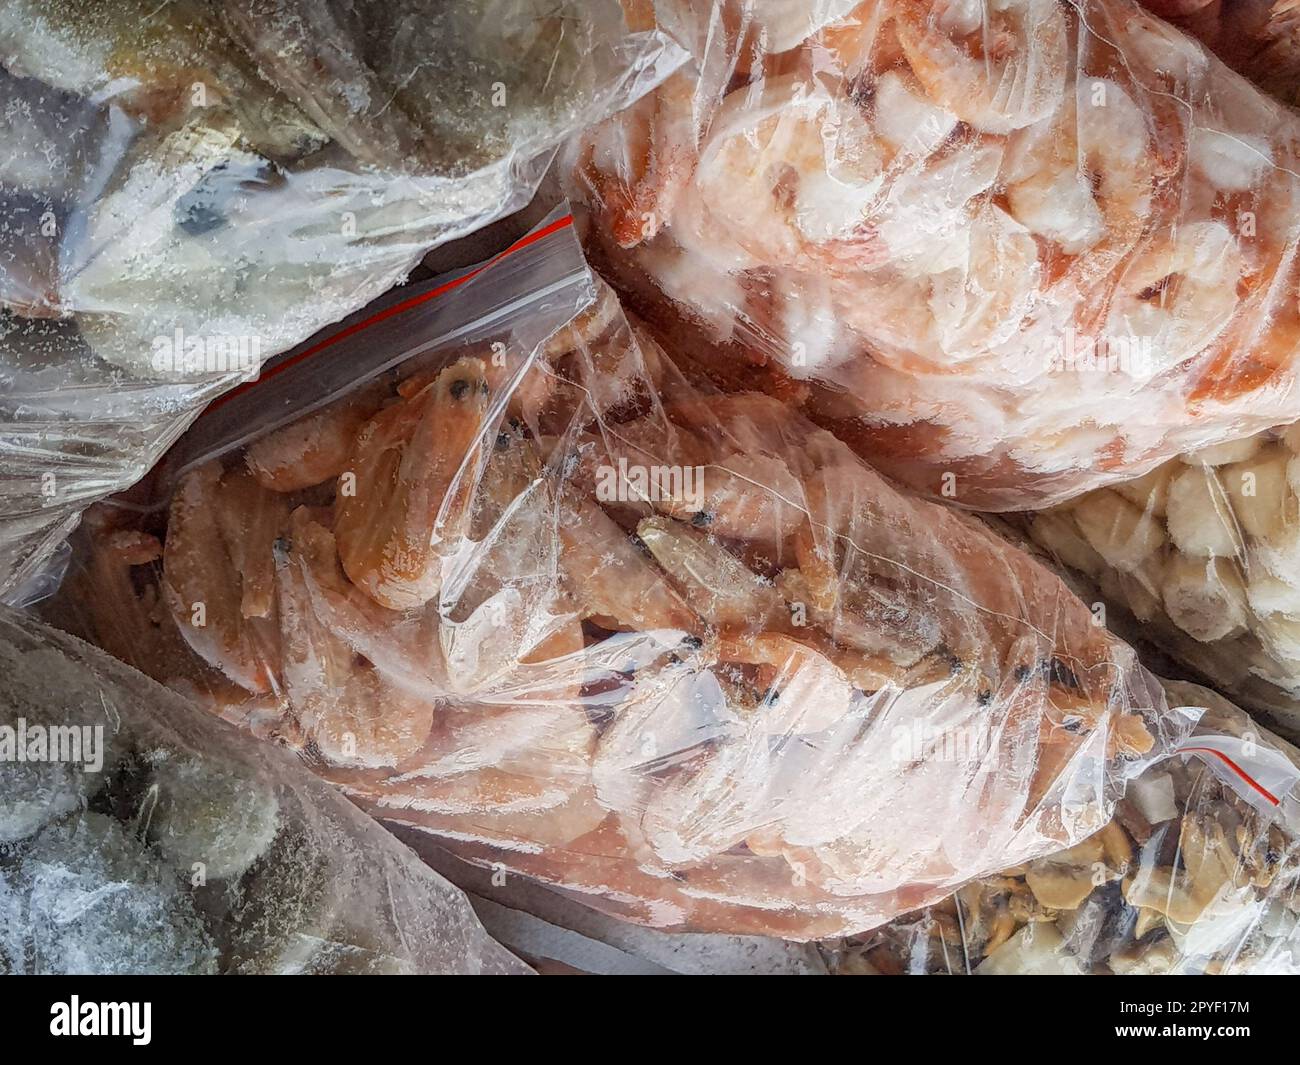 Ci sono molti grandi sacchetti di plastica con i gamberetti surgelati crudi e bolliti sul banco del mercato del pesce. Foto Stock